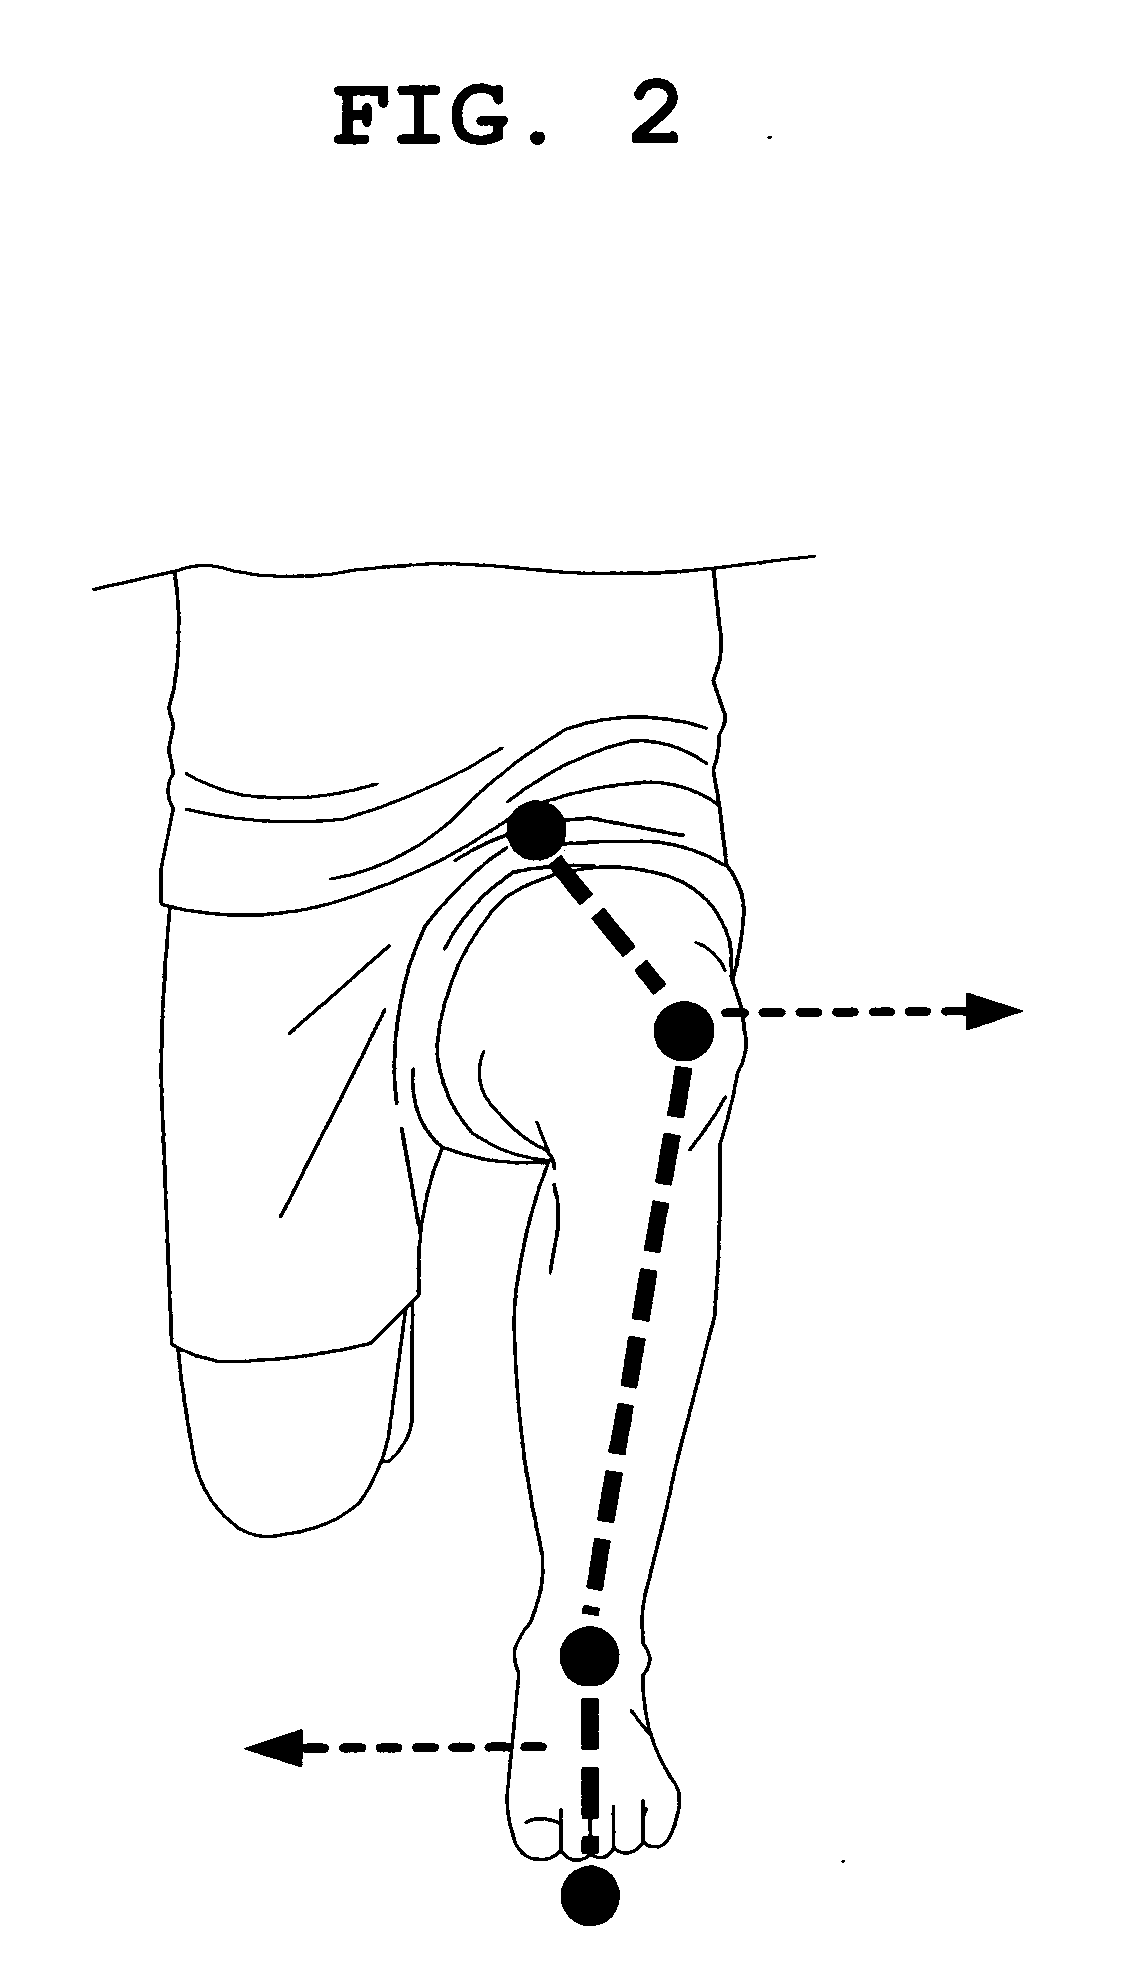 Socks and production method of same